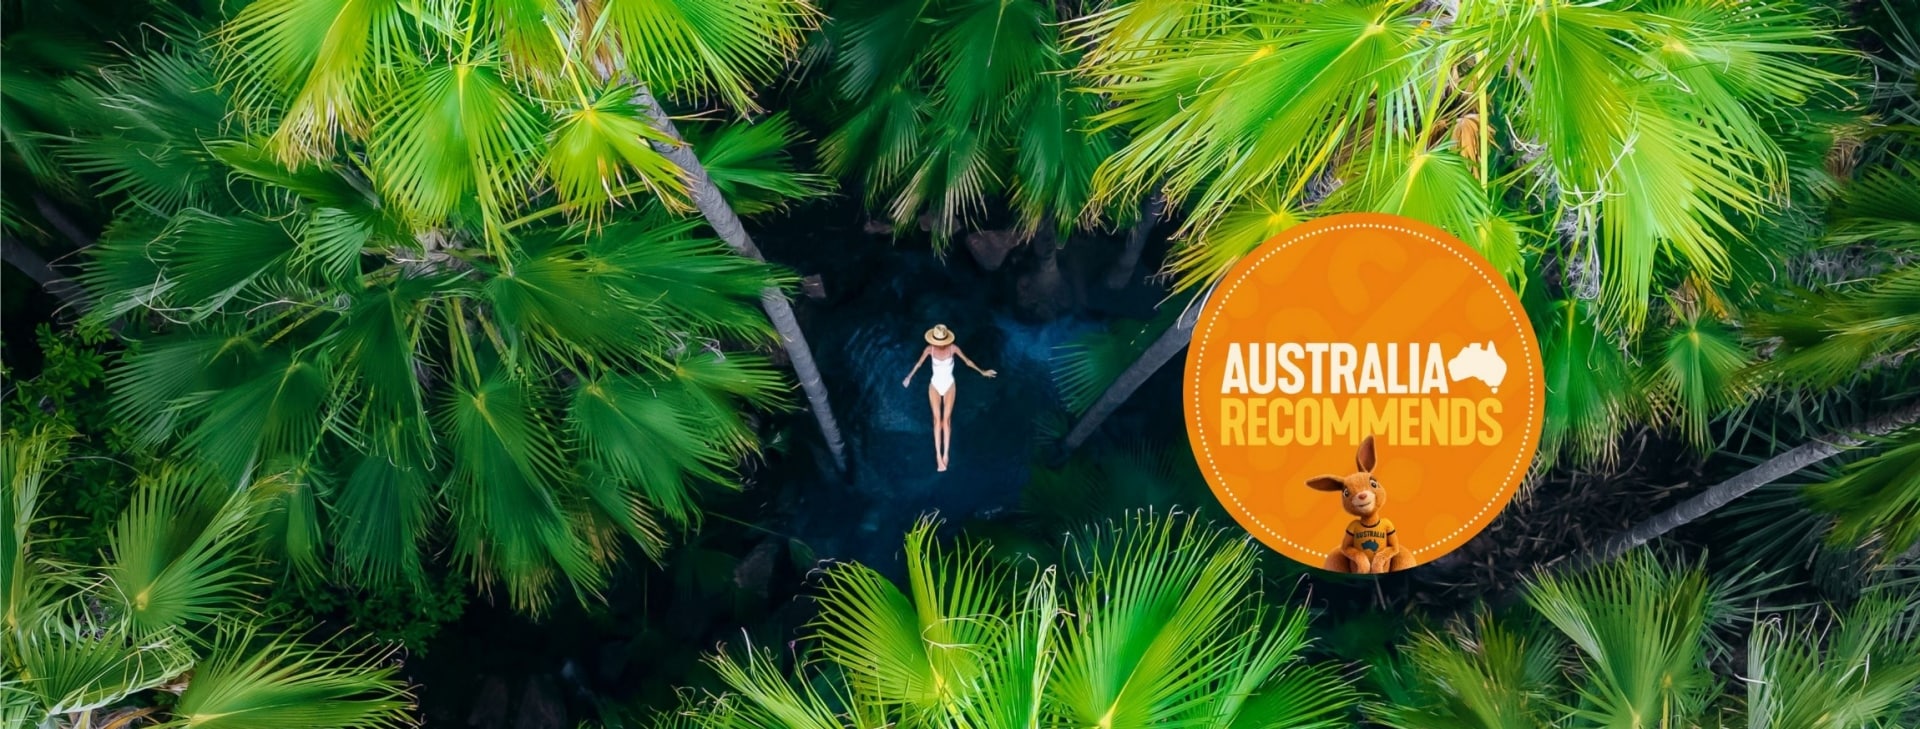 西オーストラリア州、キンバリー、ゼベディー・スプリングス、ヤシの木に囲まれて水に浮かぶ女性の空撮 © Tourism Australia